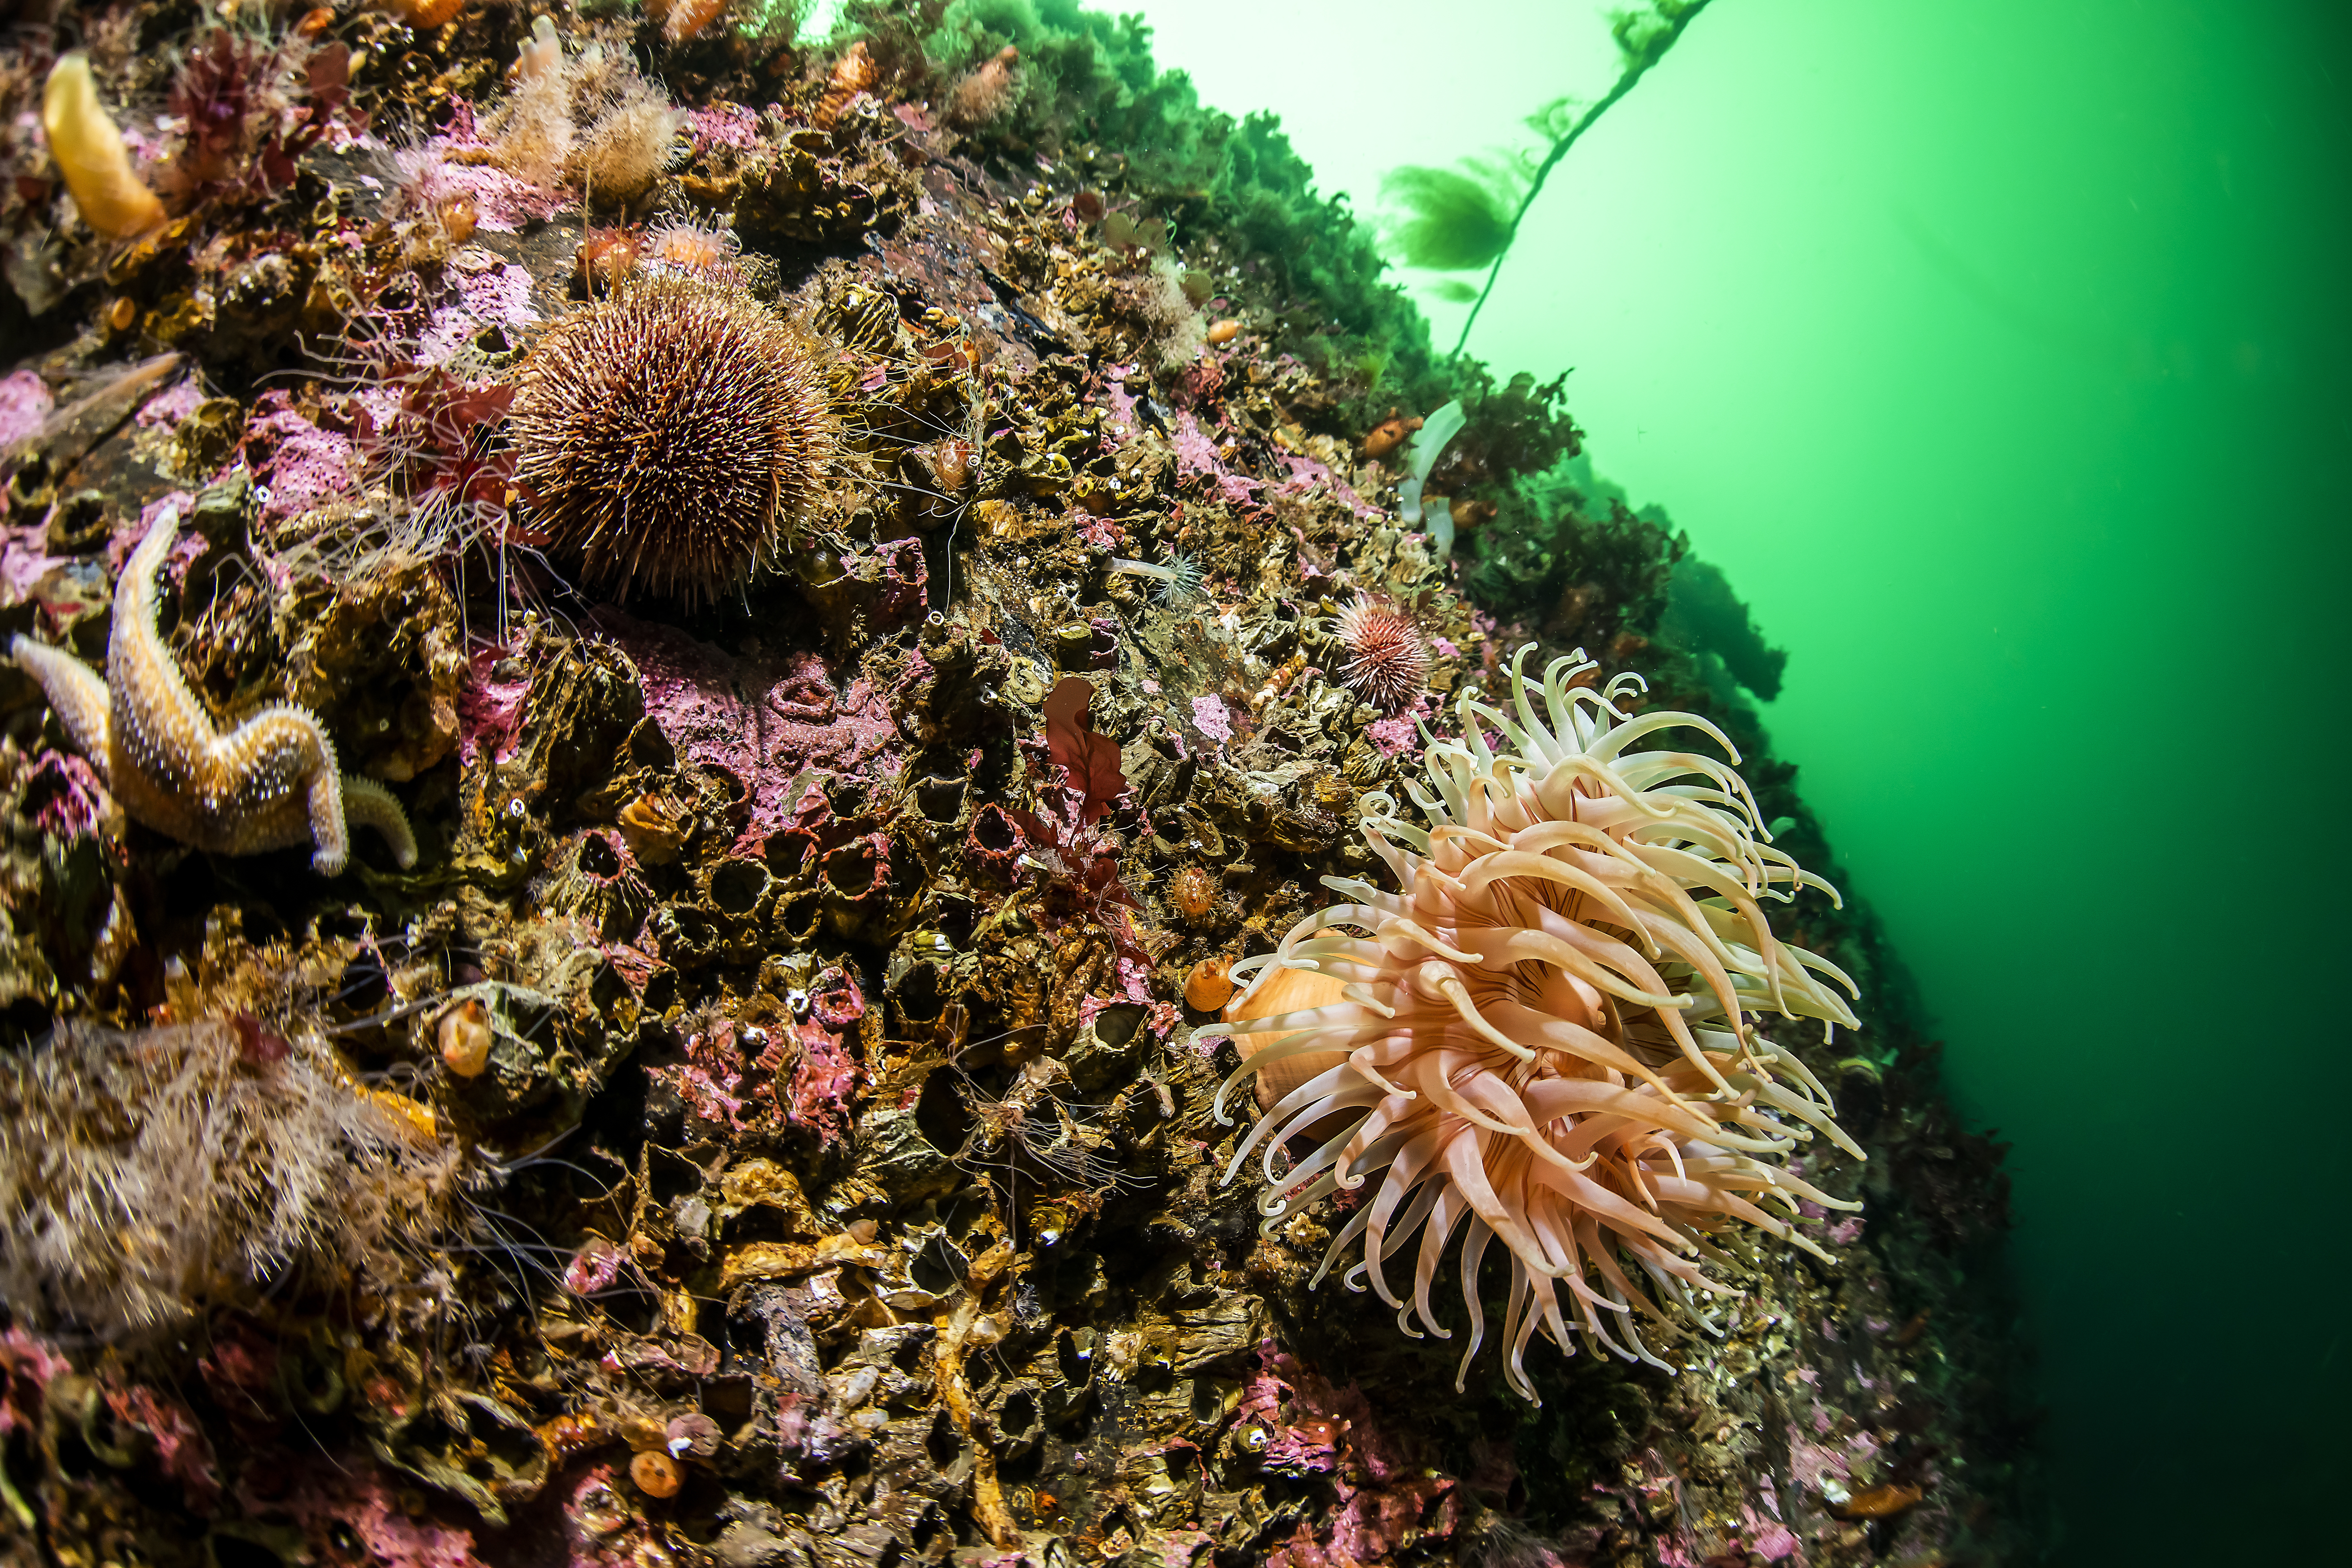 Stor sjøanemone, Urticina
eques, og vanlig
kråkebolle pluss mye
små biologi, Rapparfjorden utenfor Markoppneset. Foto: Erling Svensen